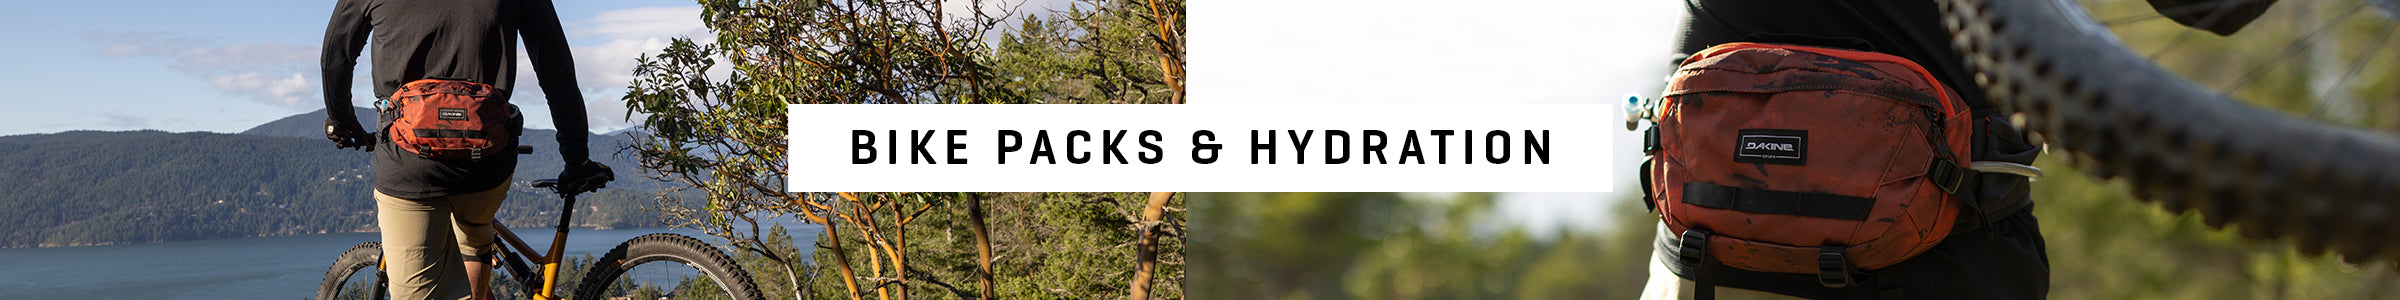 Bike Backpacks & Hydration